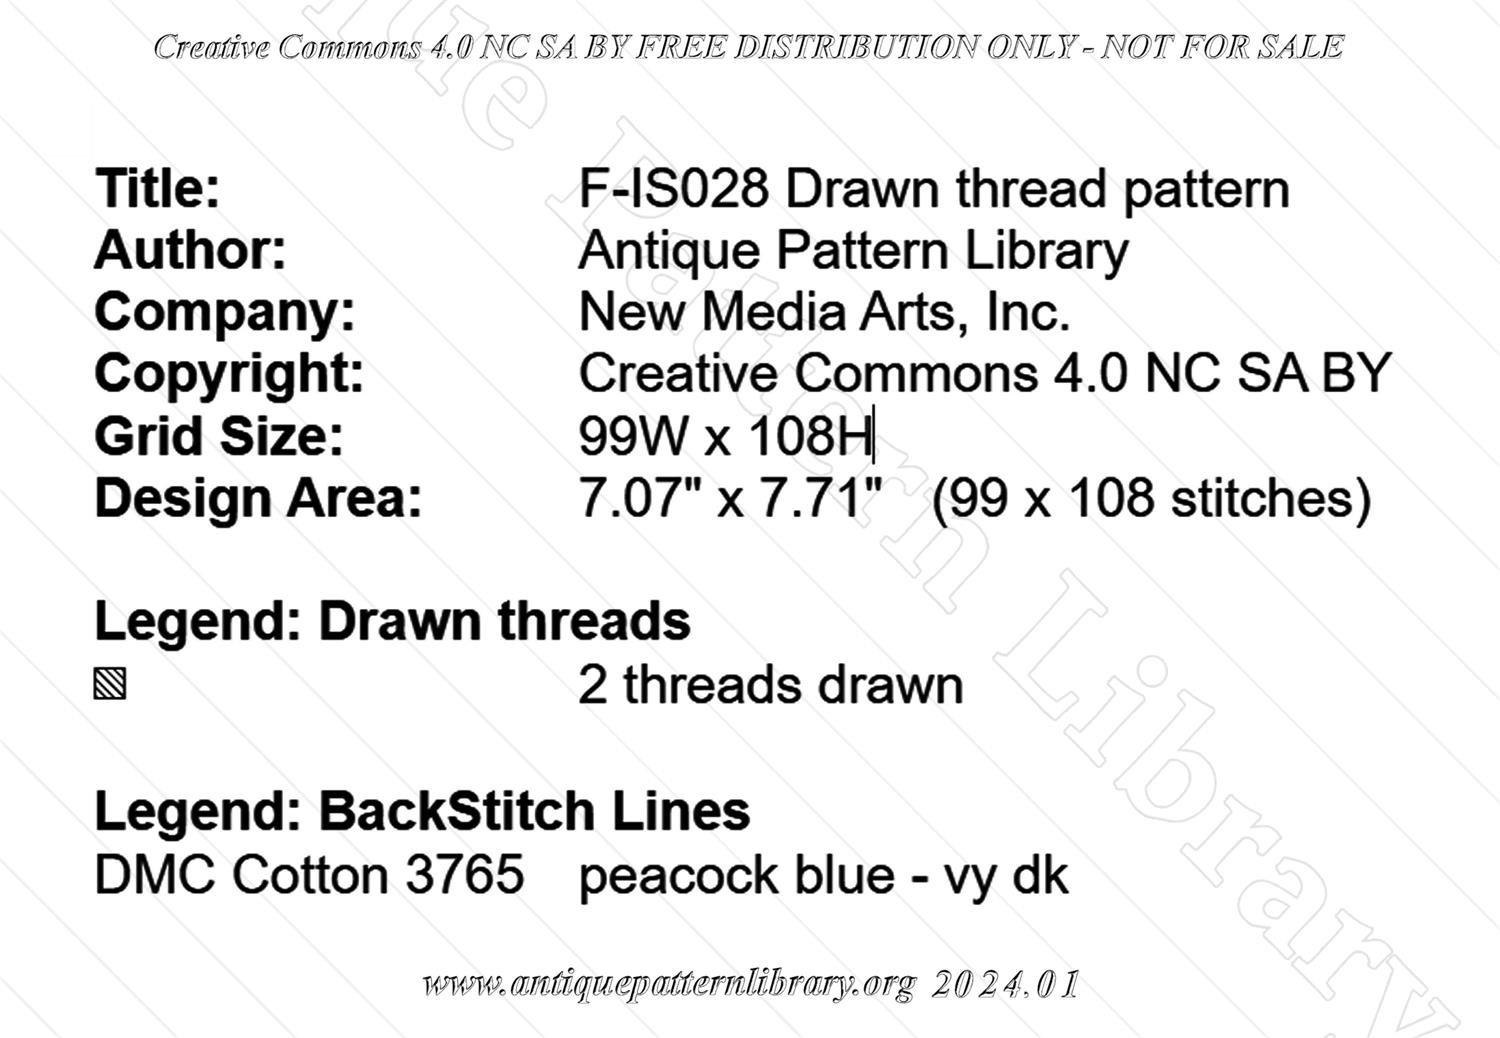 F-IS028 Drawn thread pattern